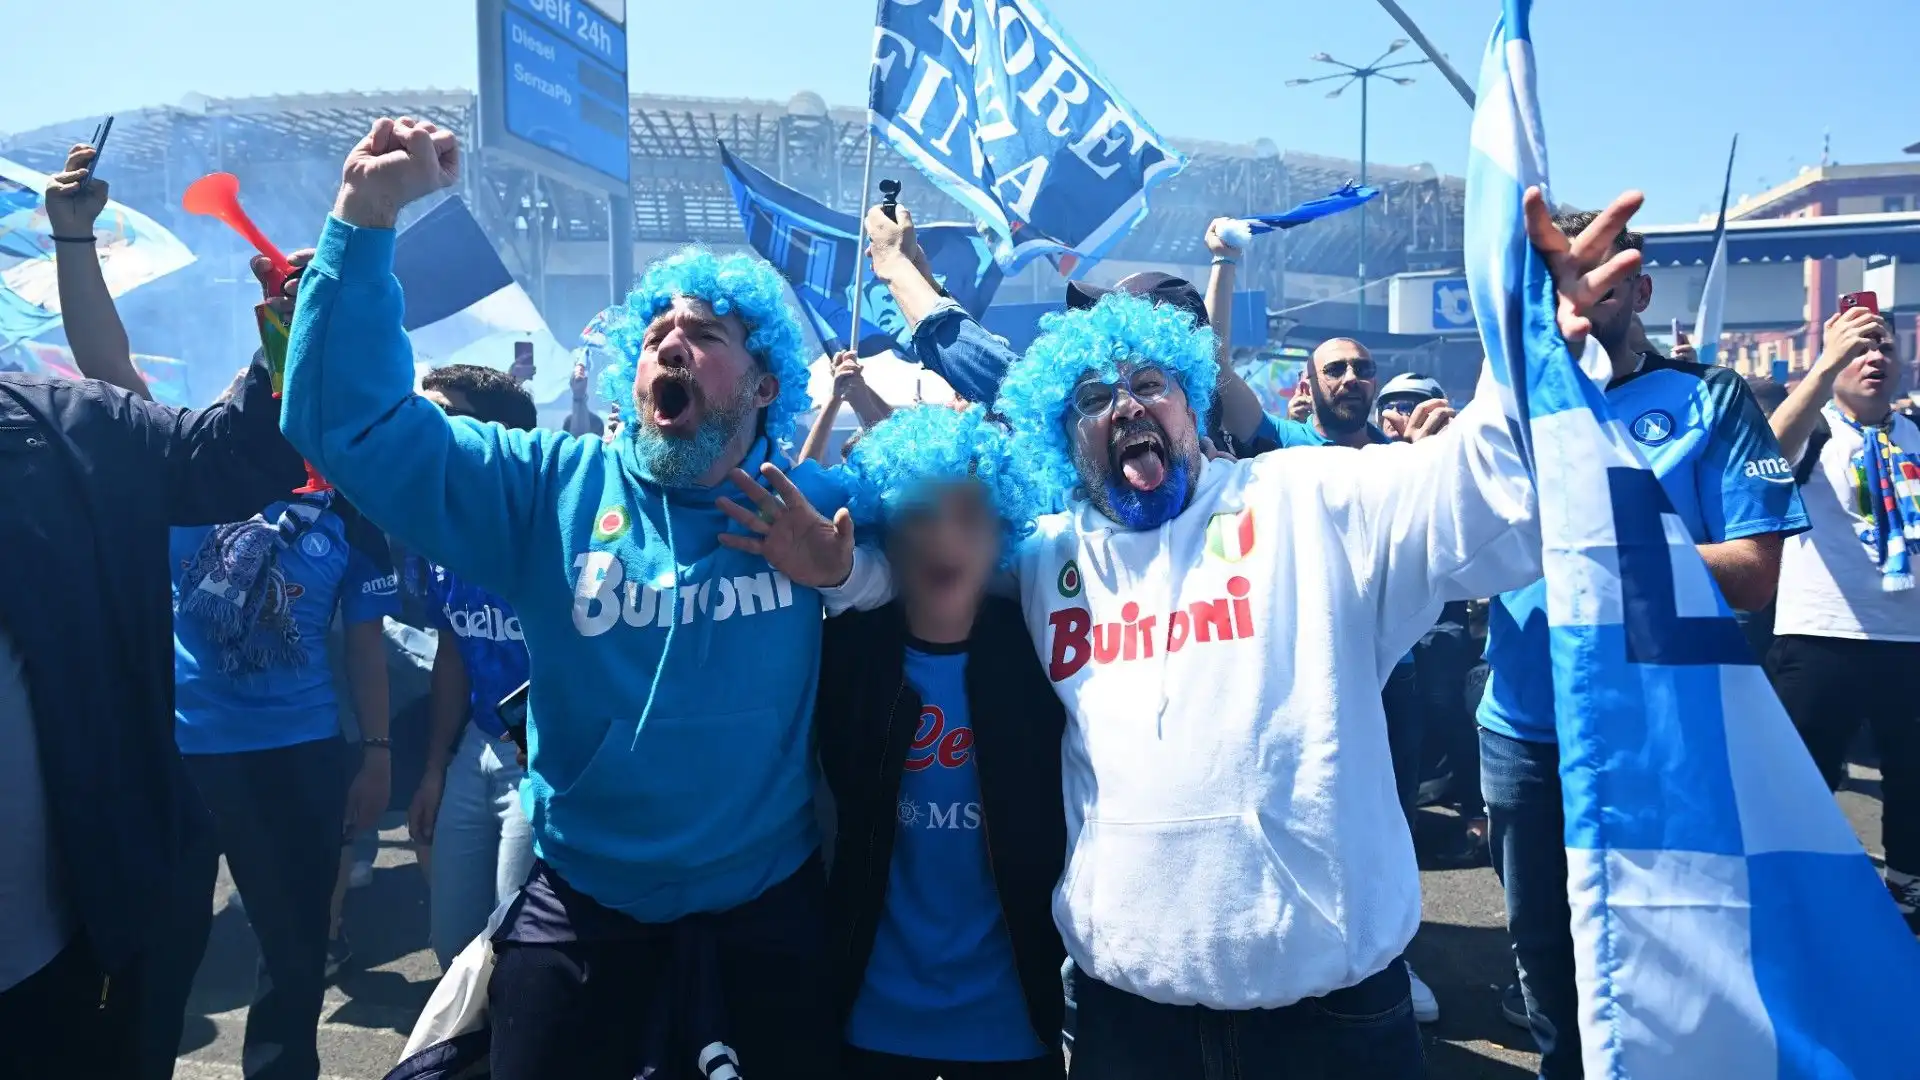 Questi tifosi hanno scelto una parrucca azzurra per celebrare il trionfo